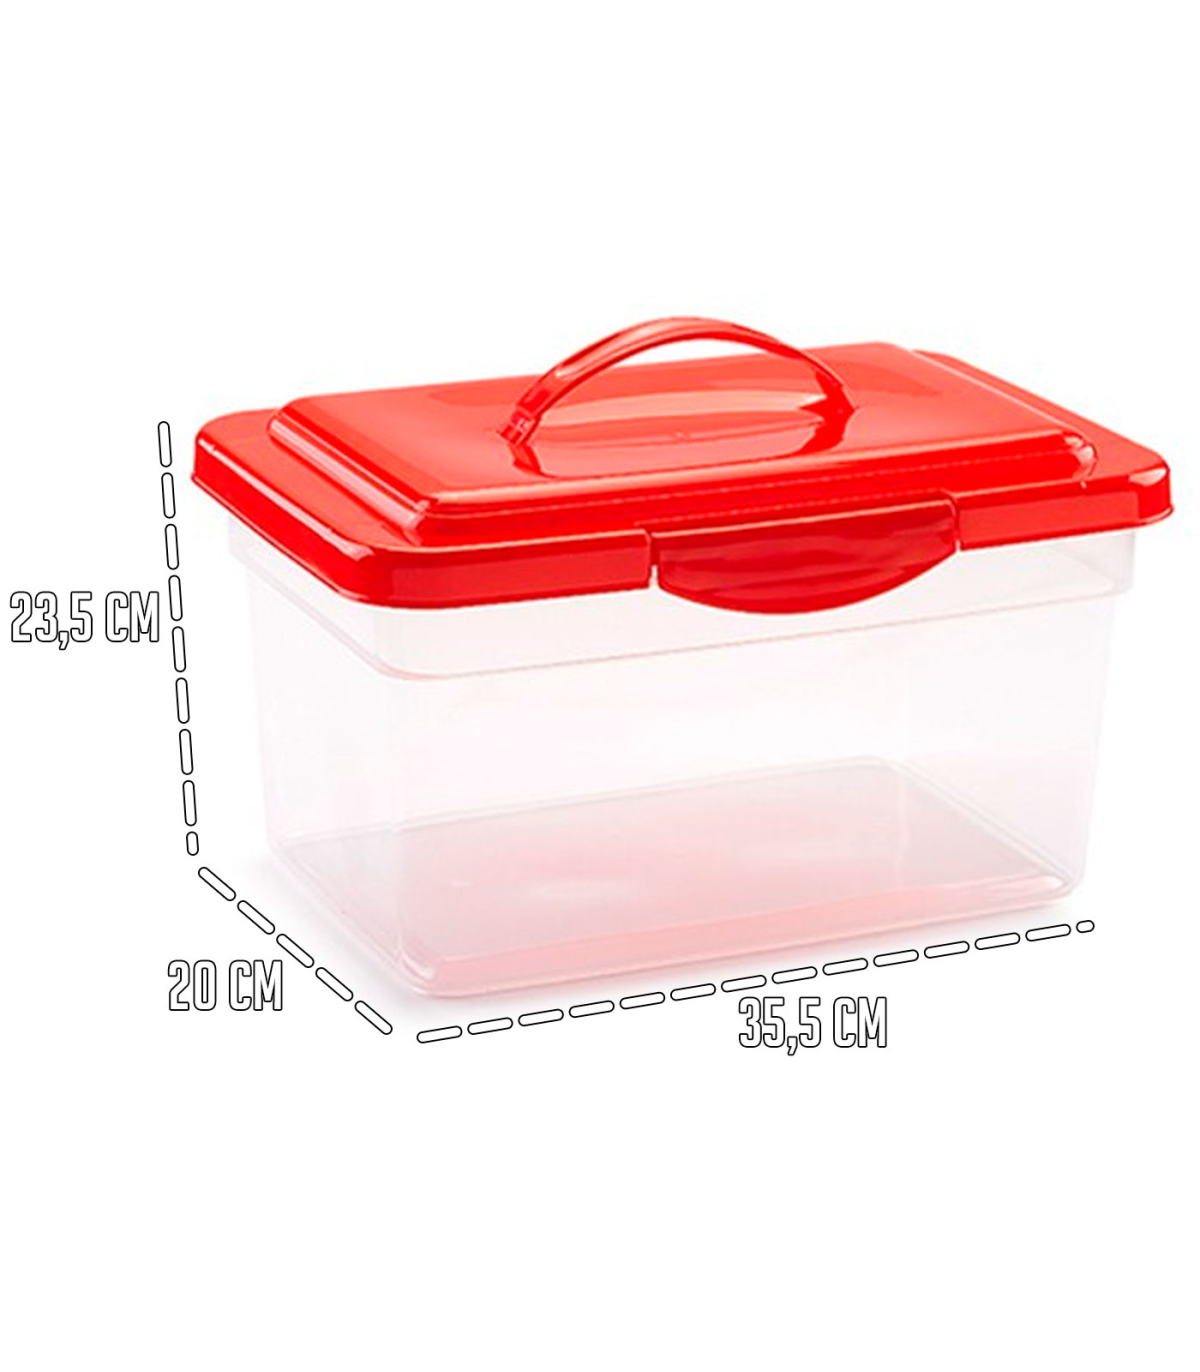 Tradineur - Caja de almacenamiento transparente con tapa en color aleatorio - N.º 25 - Capacidad de 9 Litros 23,5 35,5 x 20